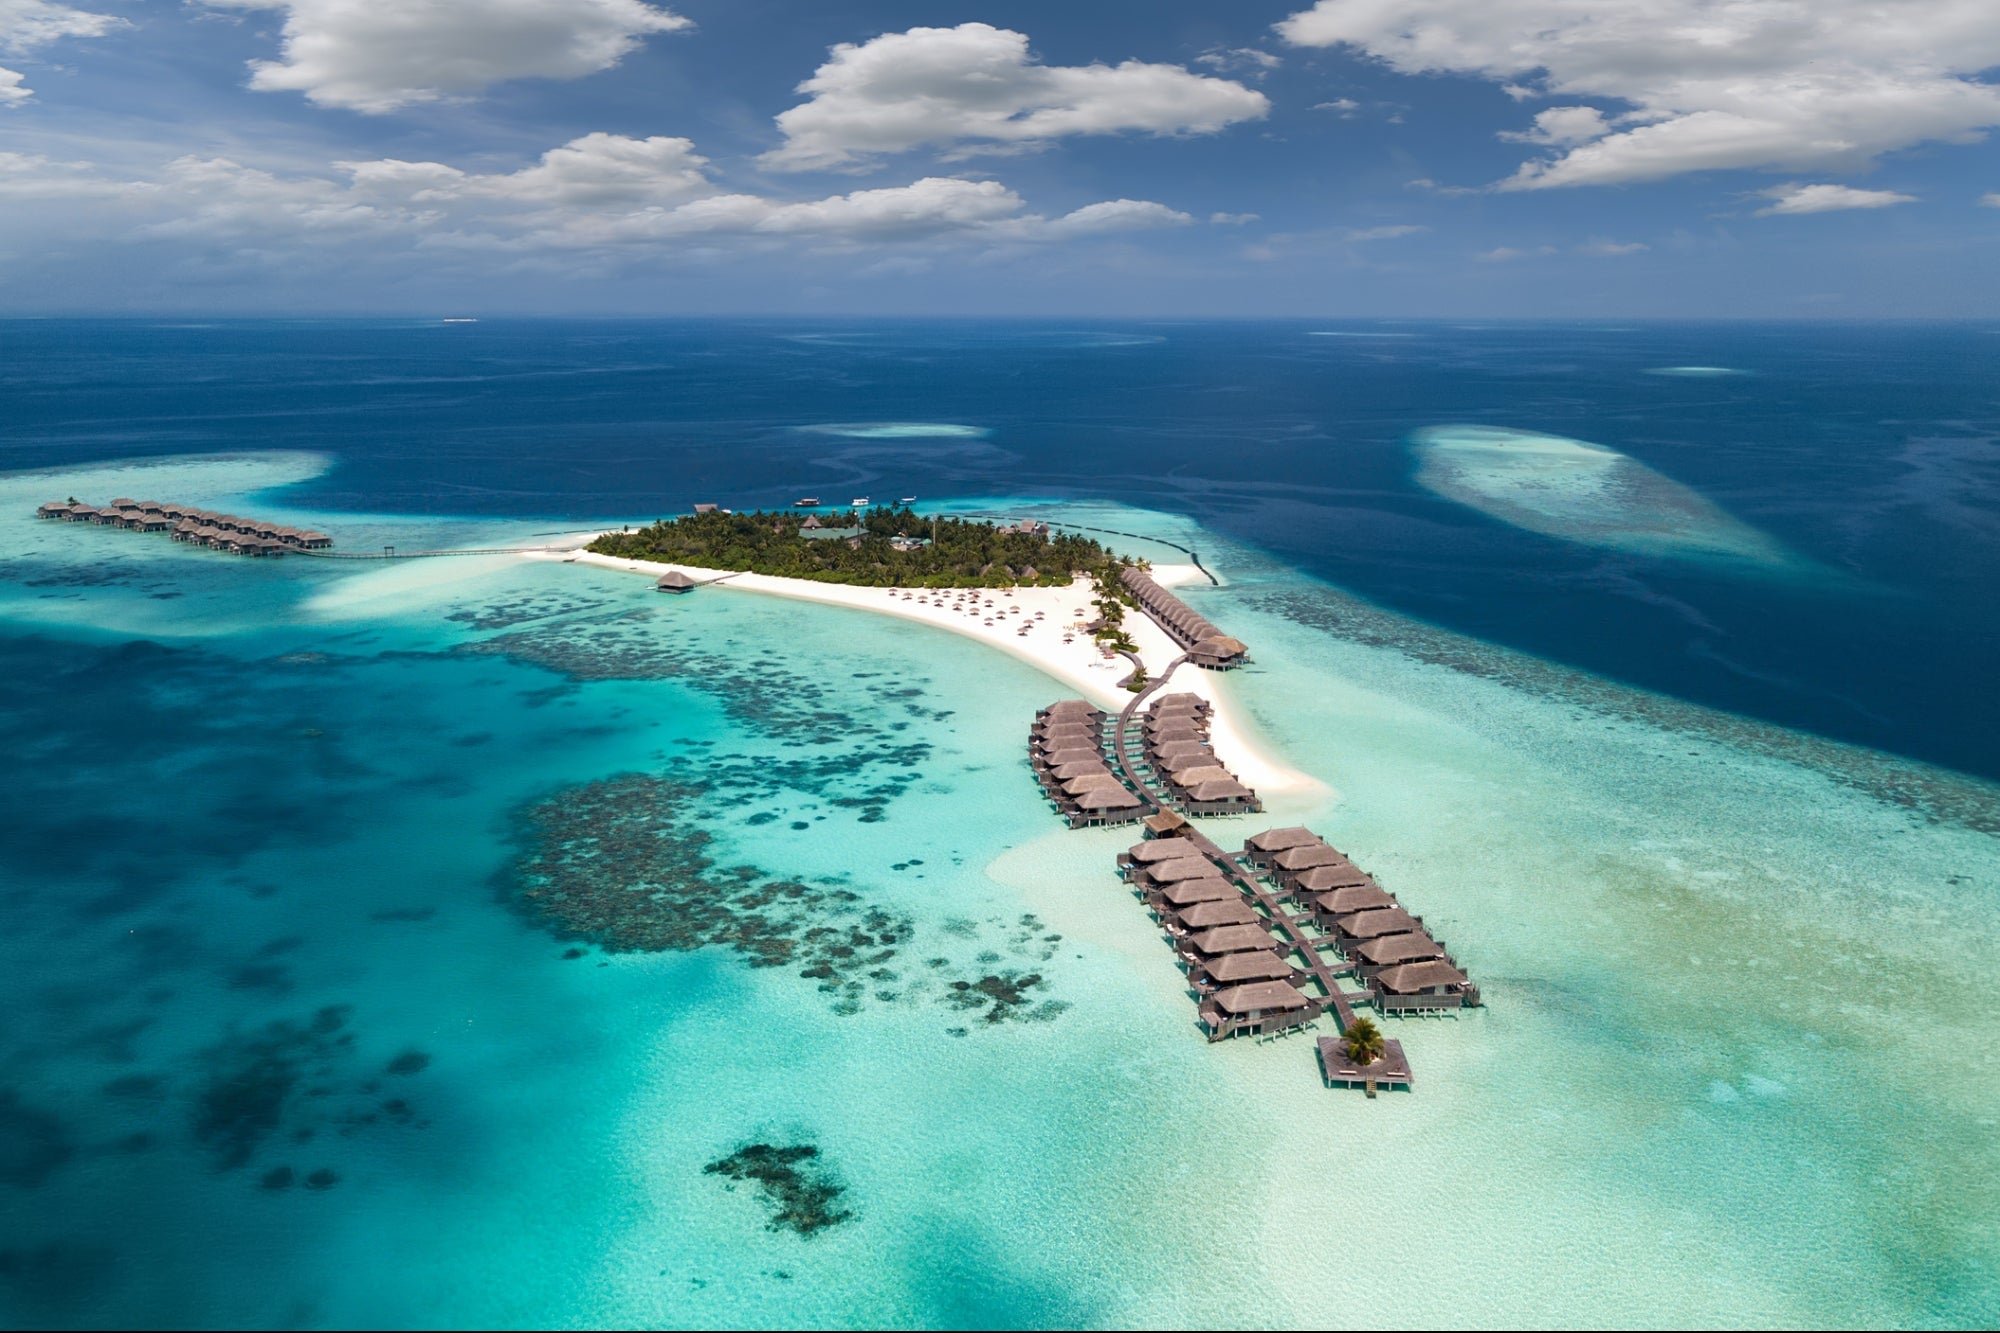 المالديف : السحر والجمال